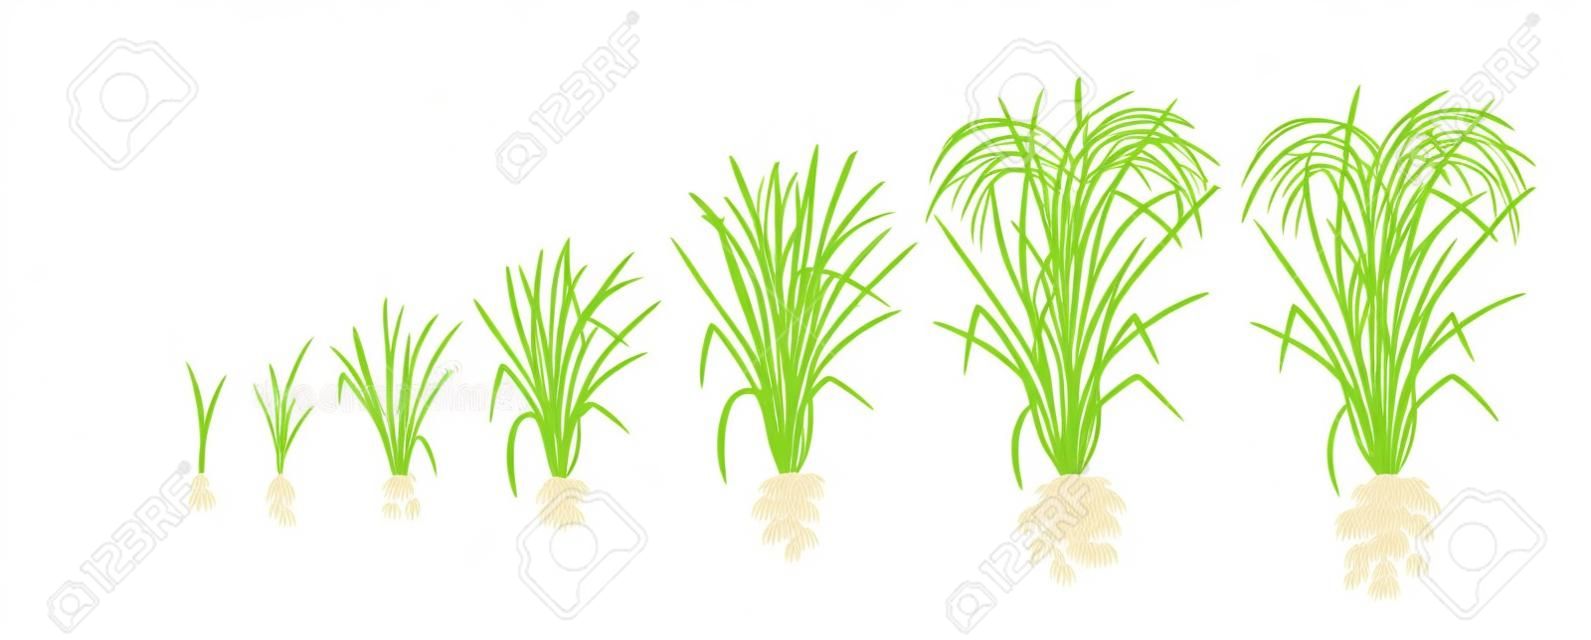 Stades de croissance du plant de riz. Phases d'augmentation du riz. Illustration vectorielle. Oryza sativa. Période de maturation. Le cycle de vie. Utilisez des engrais. Sur fond blanc. C'est la denrée agricole avec la troisième production mondiale la plus élevée.